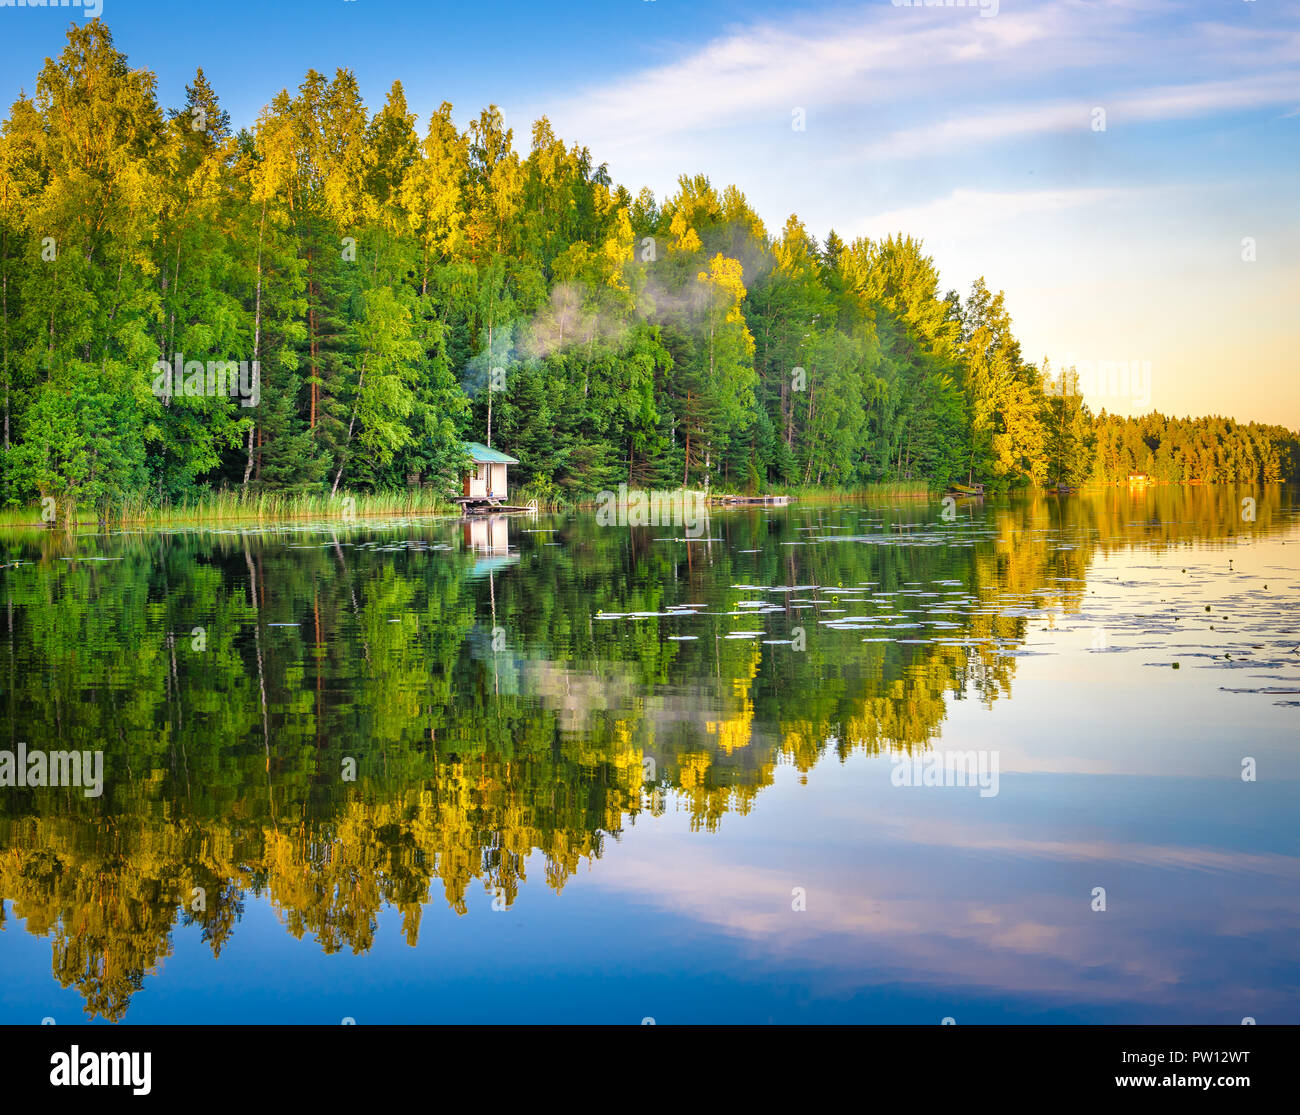 Il lago a Tampere in Finlandia, il lago di riflessioni sull'acqua con piccola casa sull'acqua, bellissimo cielo con molti colori e alberi Foto Stock